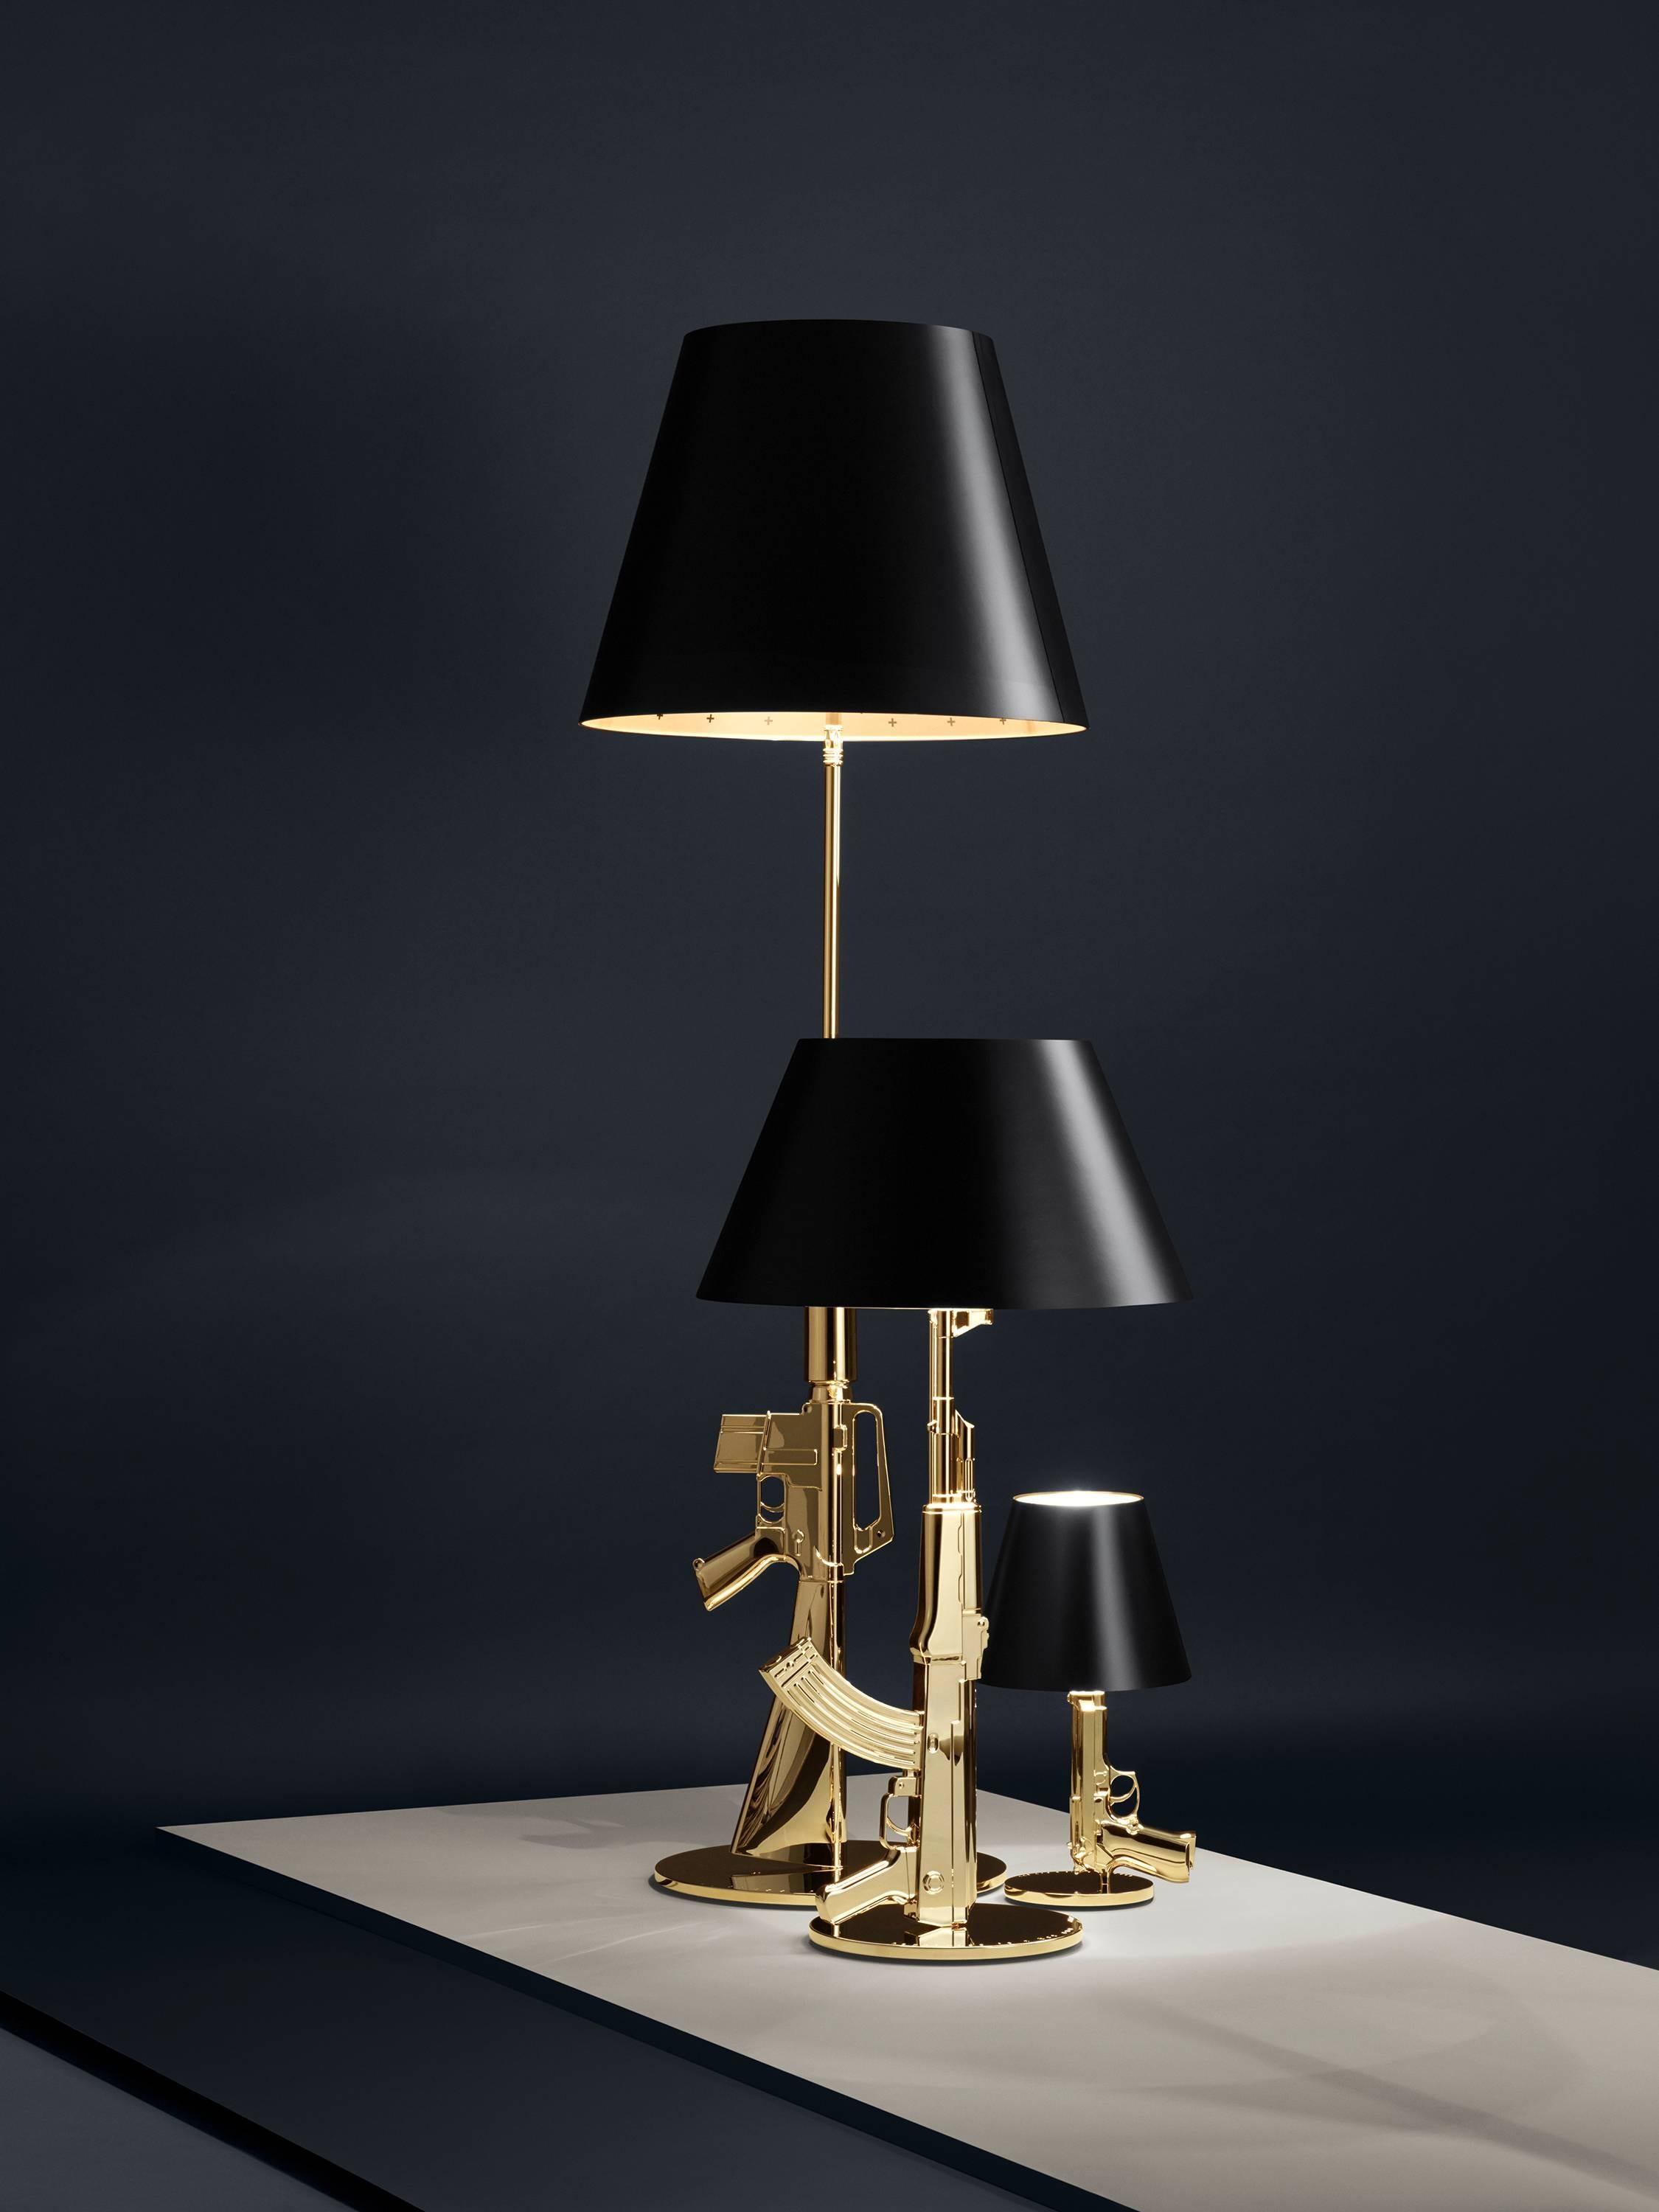 Cette lampe de table élégante et avant-gardiste fait partie de la collection Guns de l'artiste, qui fait une déclaration tout en faisant le bien. 